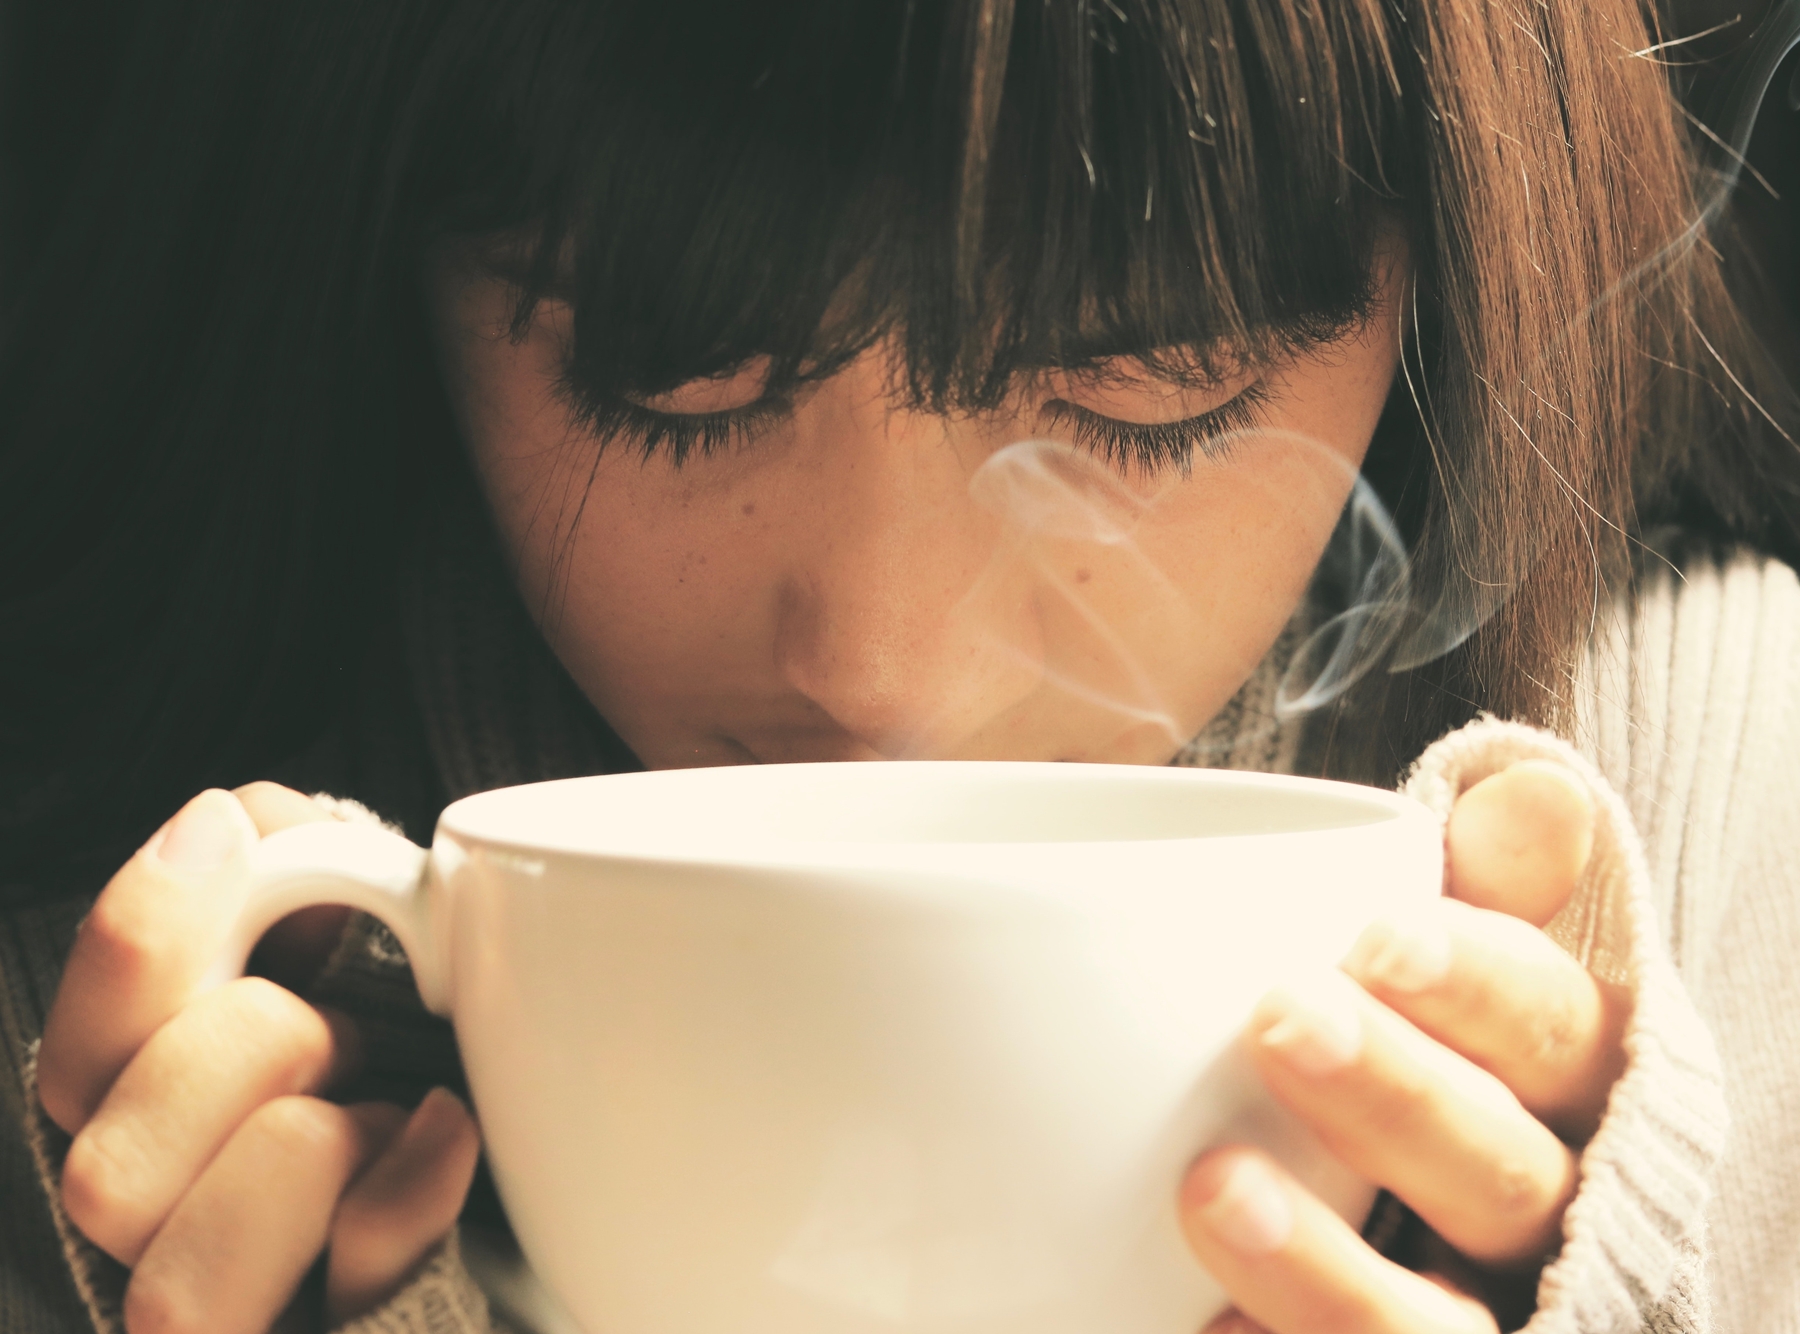 Ντεκαφεϊνέ καφές: Όλα όσα πρέπει να γνωρίζεις για την καφεΐνη που περιέχει